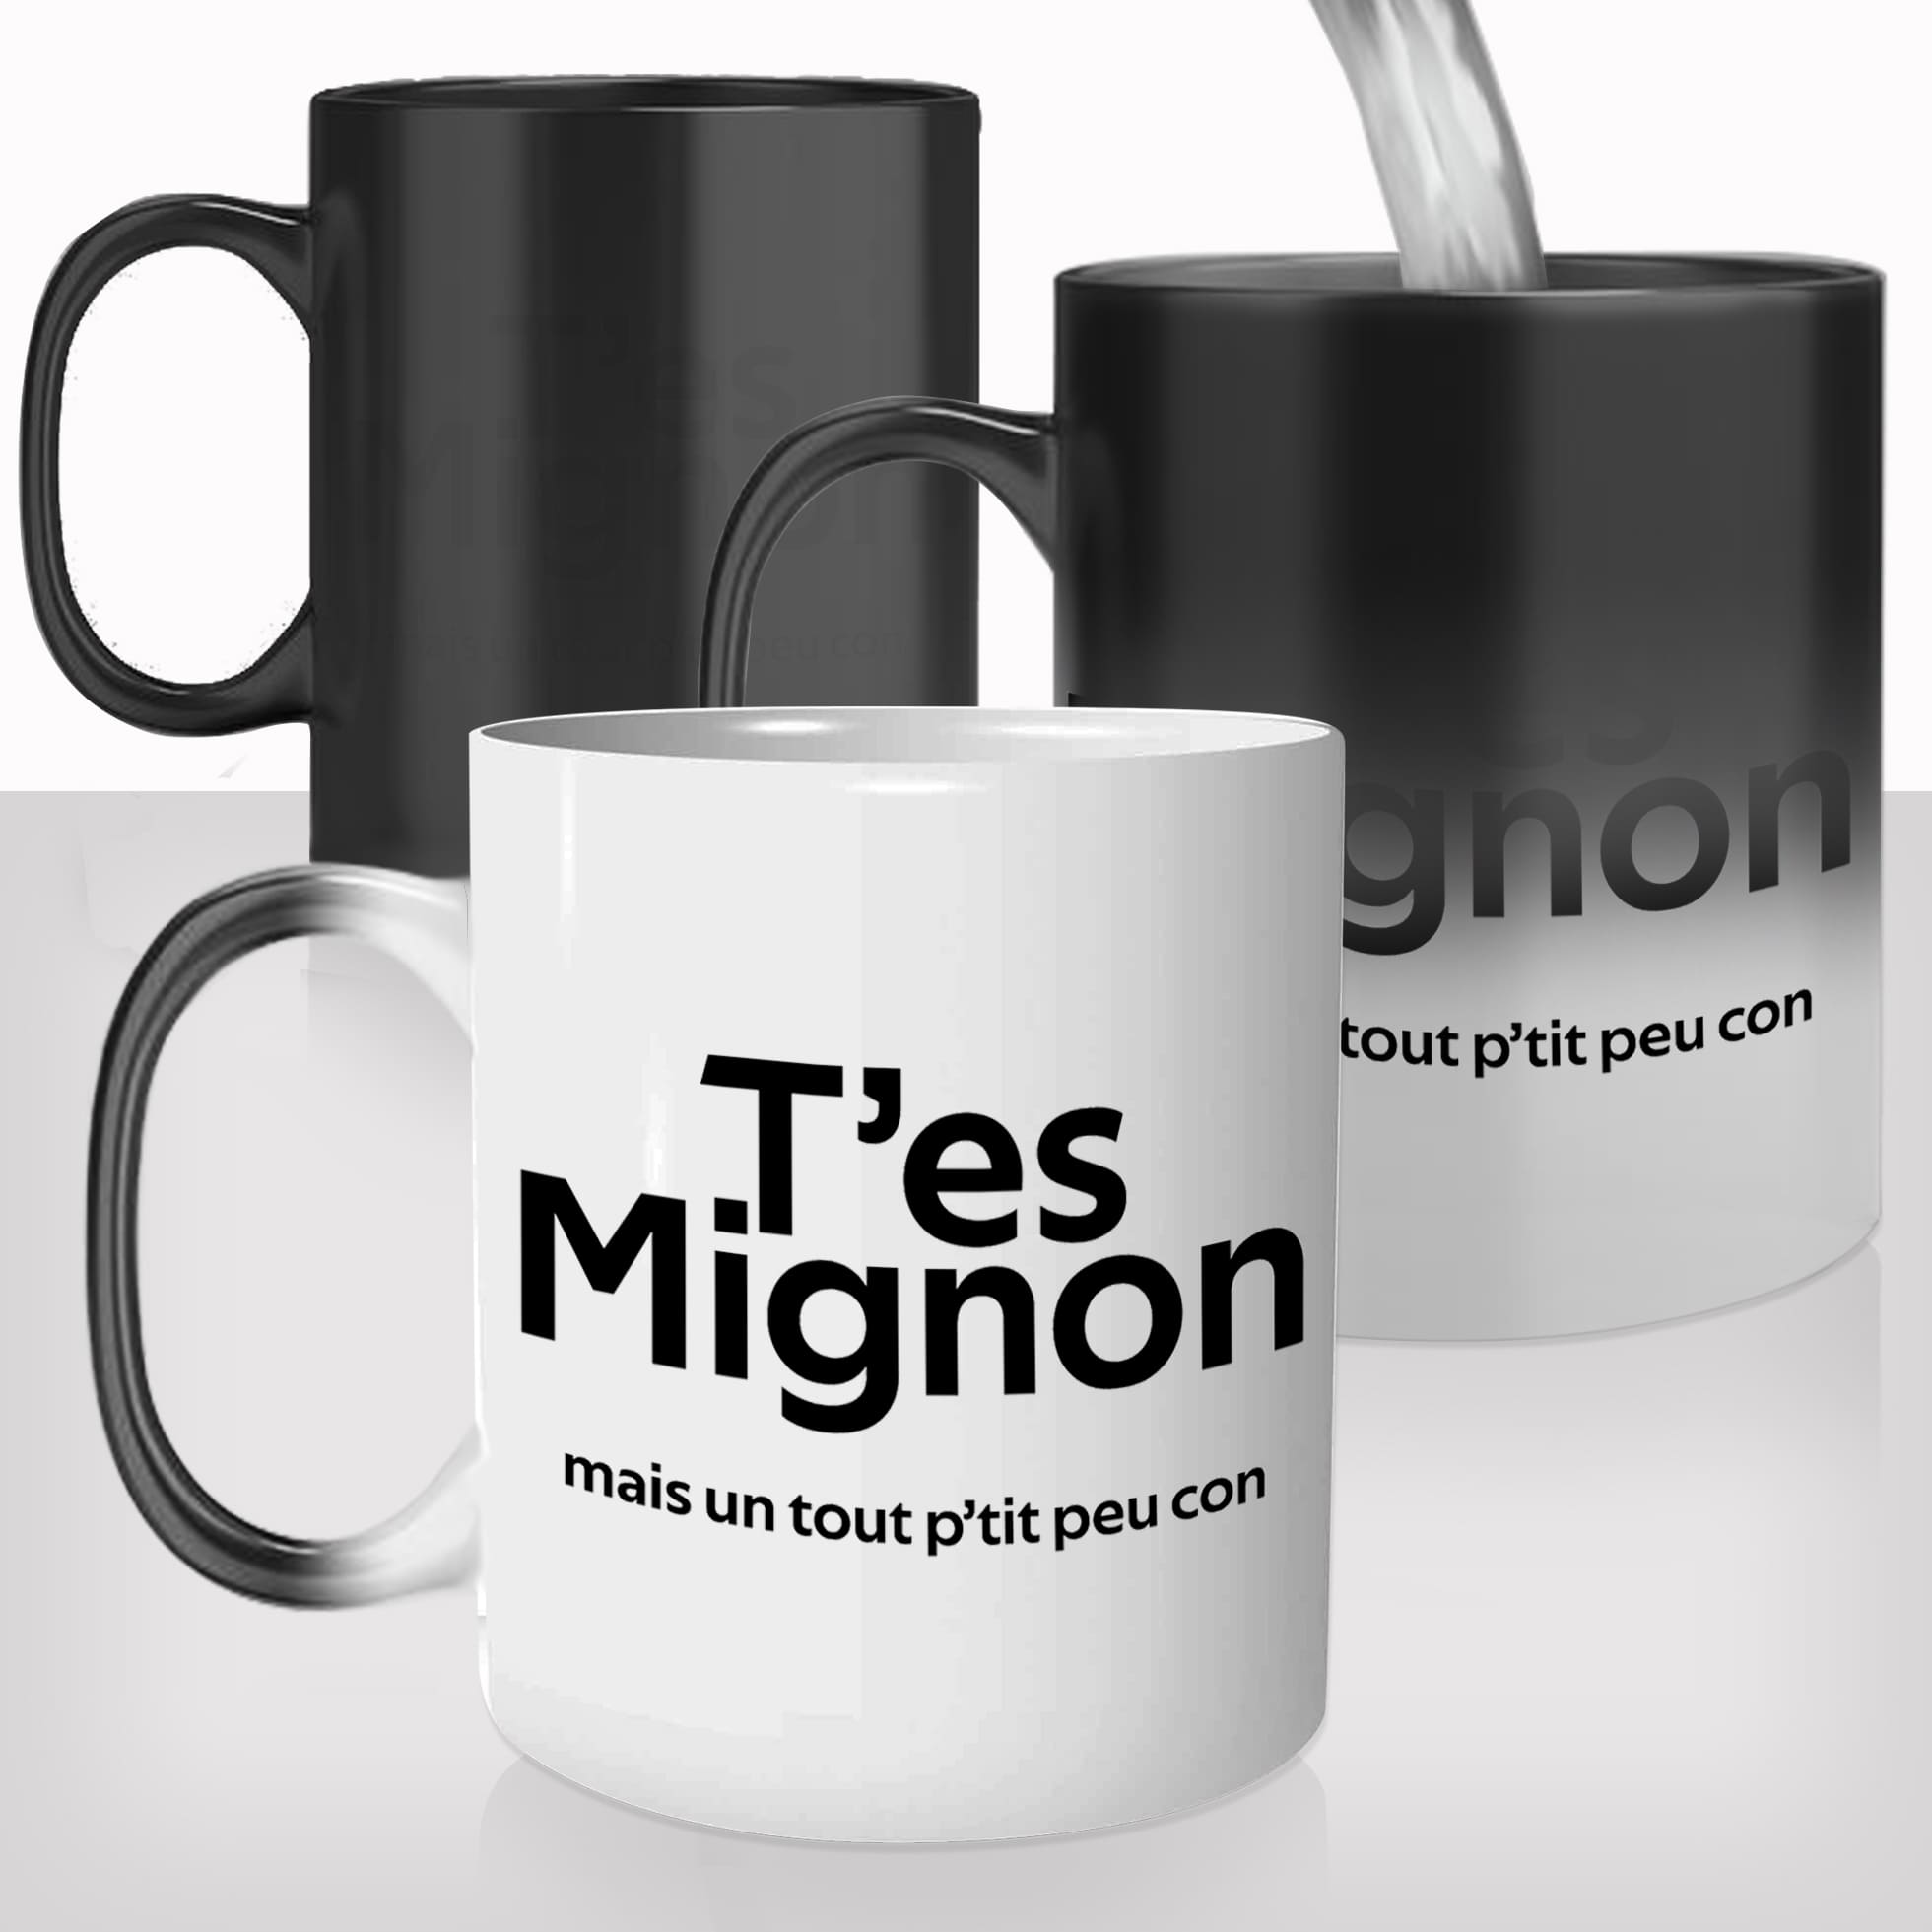 mug-magique-tasse-magic-thermo-reactif-homme-tes-mignon-mais-un-tout-ptit-peu-con-connard-photo-personnalisable-cadeau-original-fun